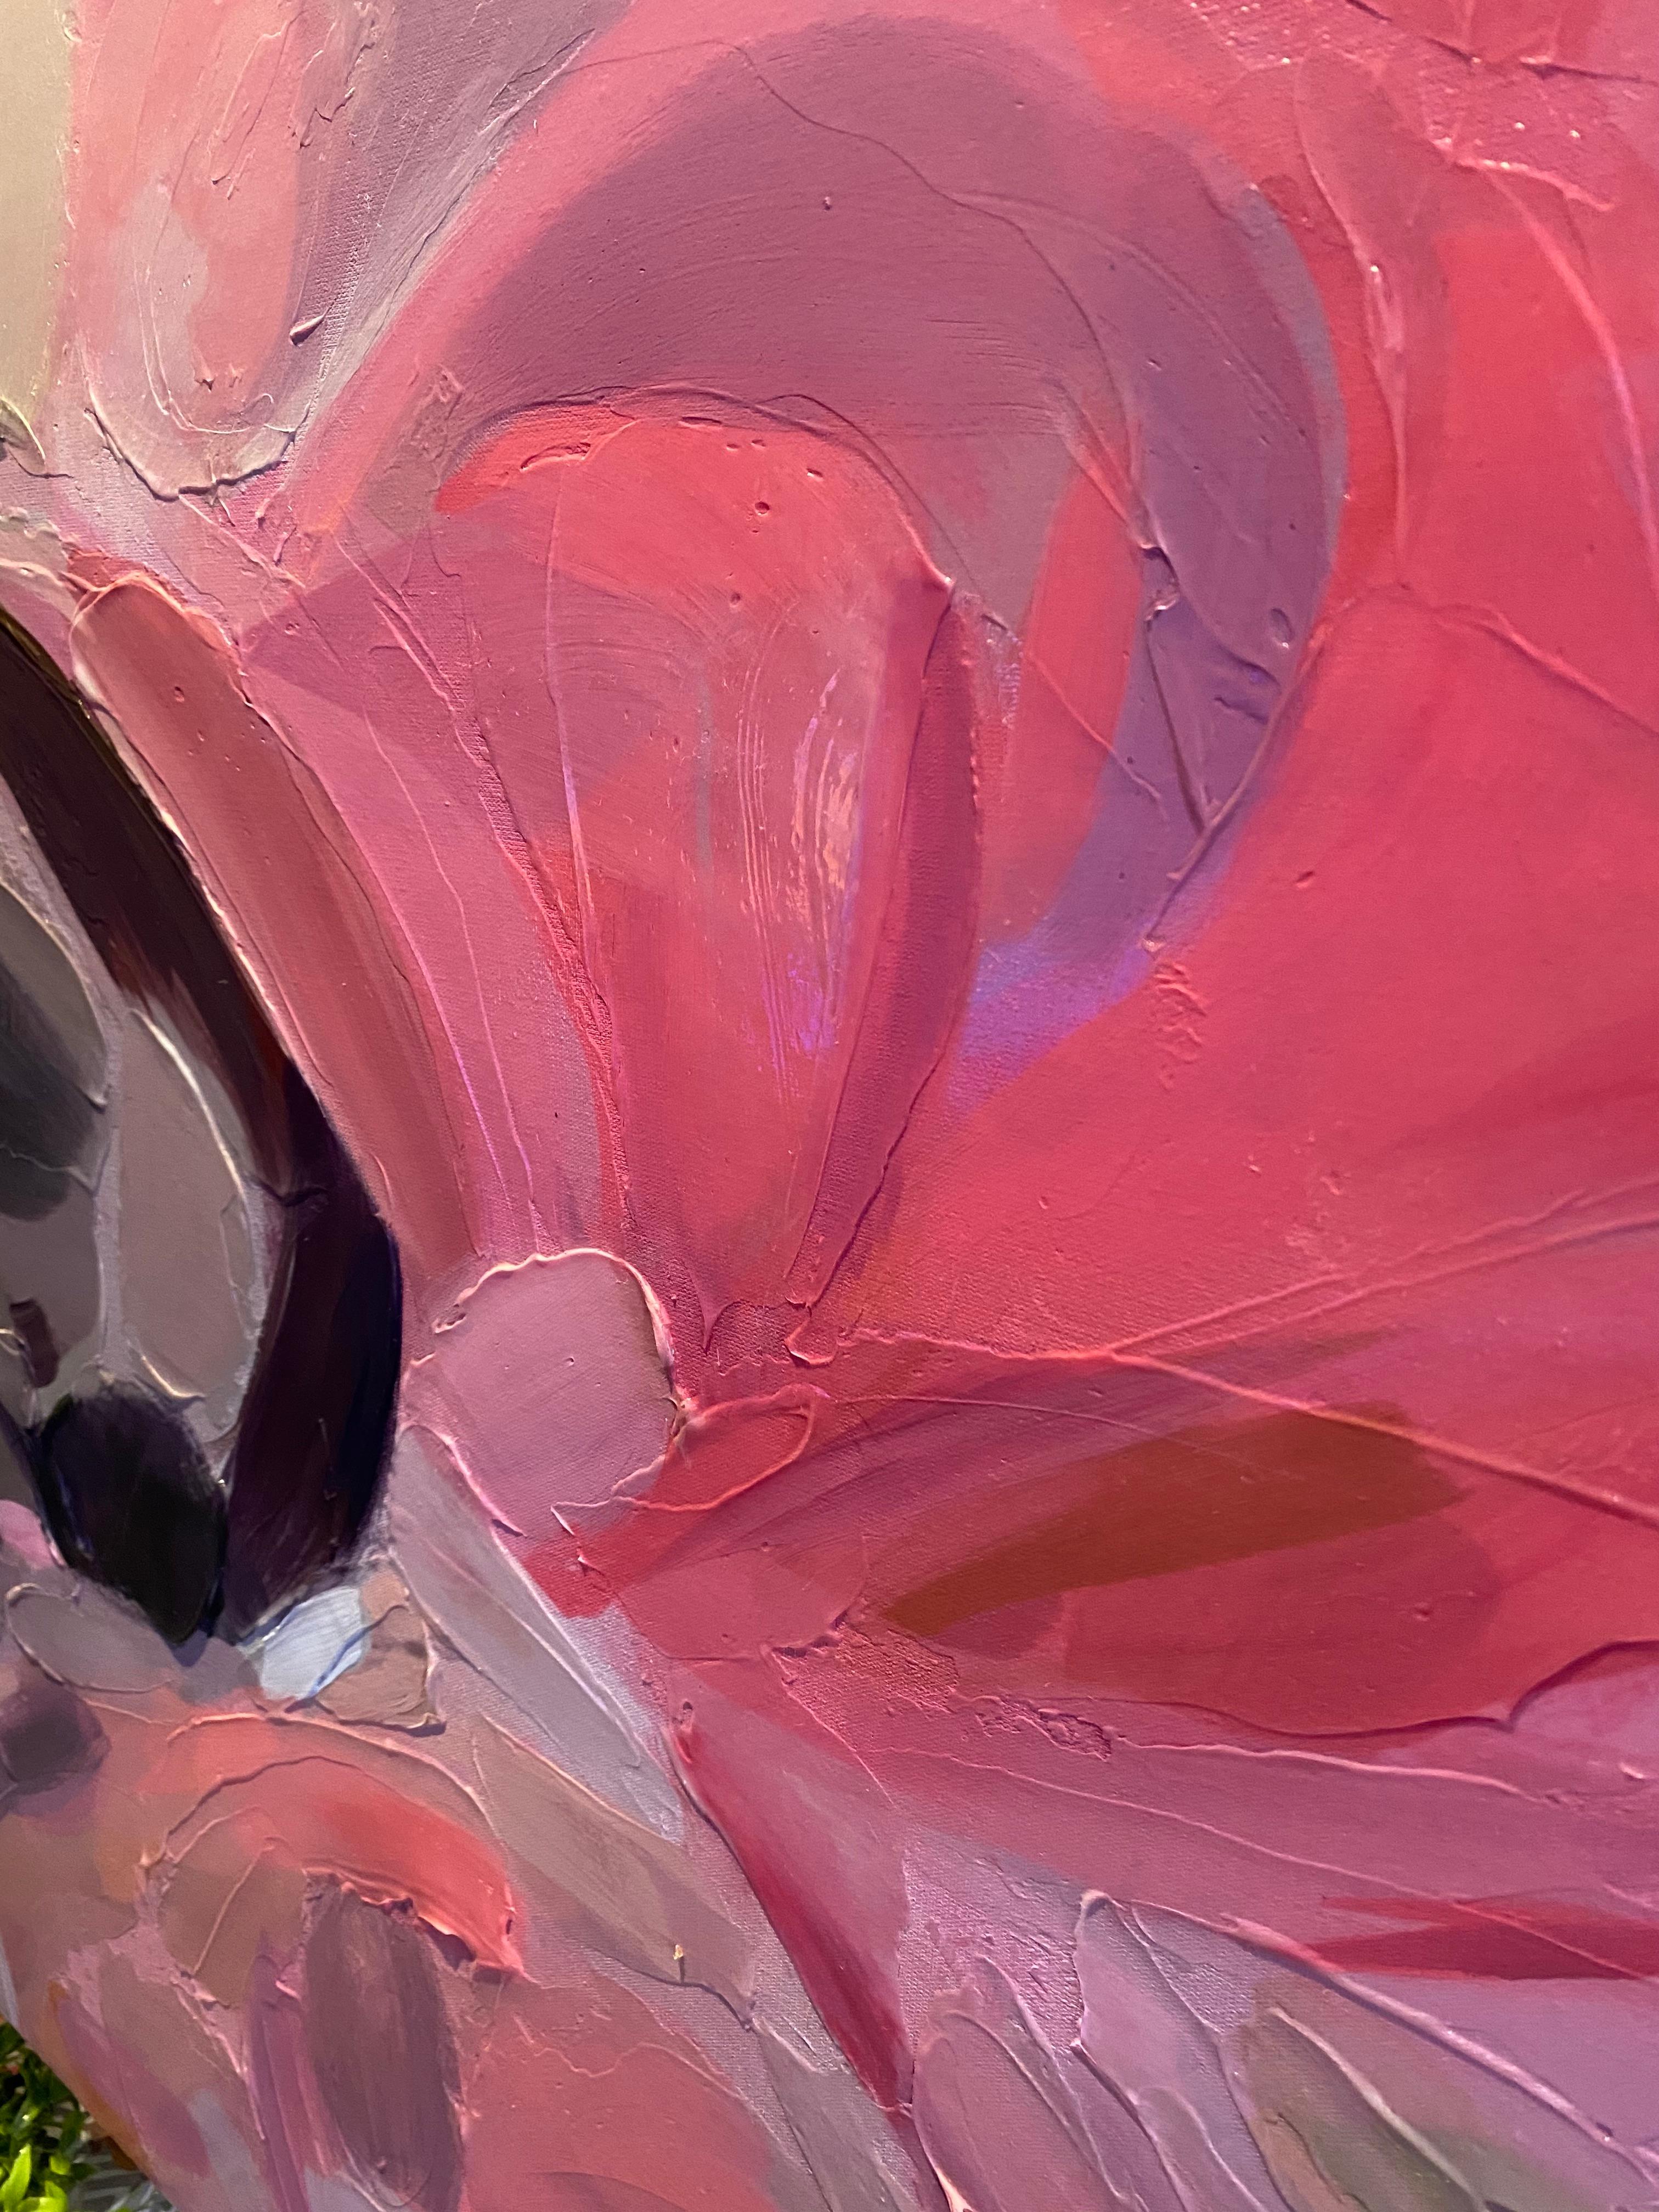 Stop Fireworks Abstrakte Rosa Blau Kunst Hand strukturiert Giclee auf Leinwand 40 Hx 60 B